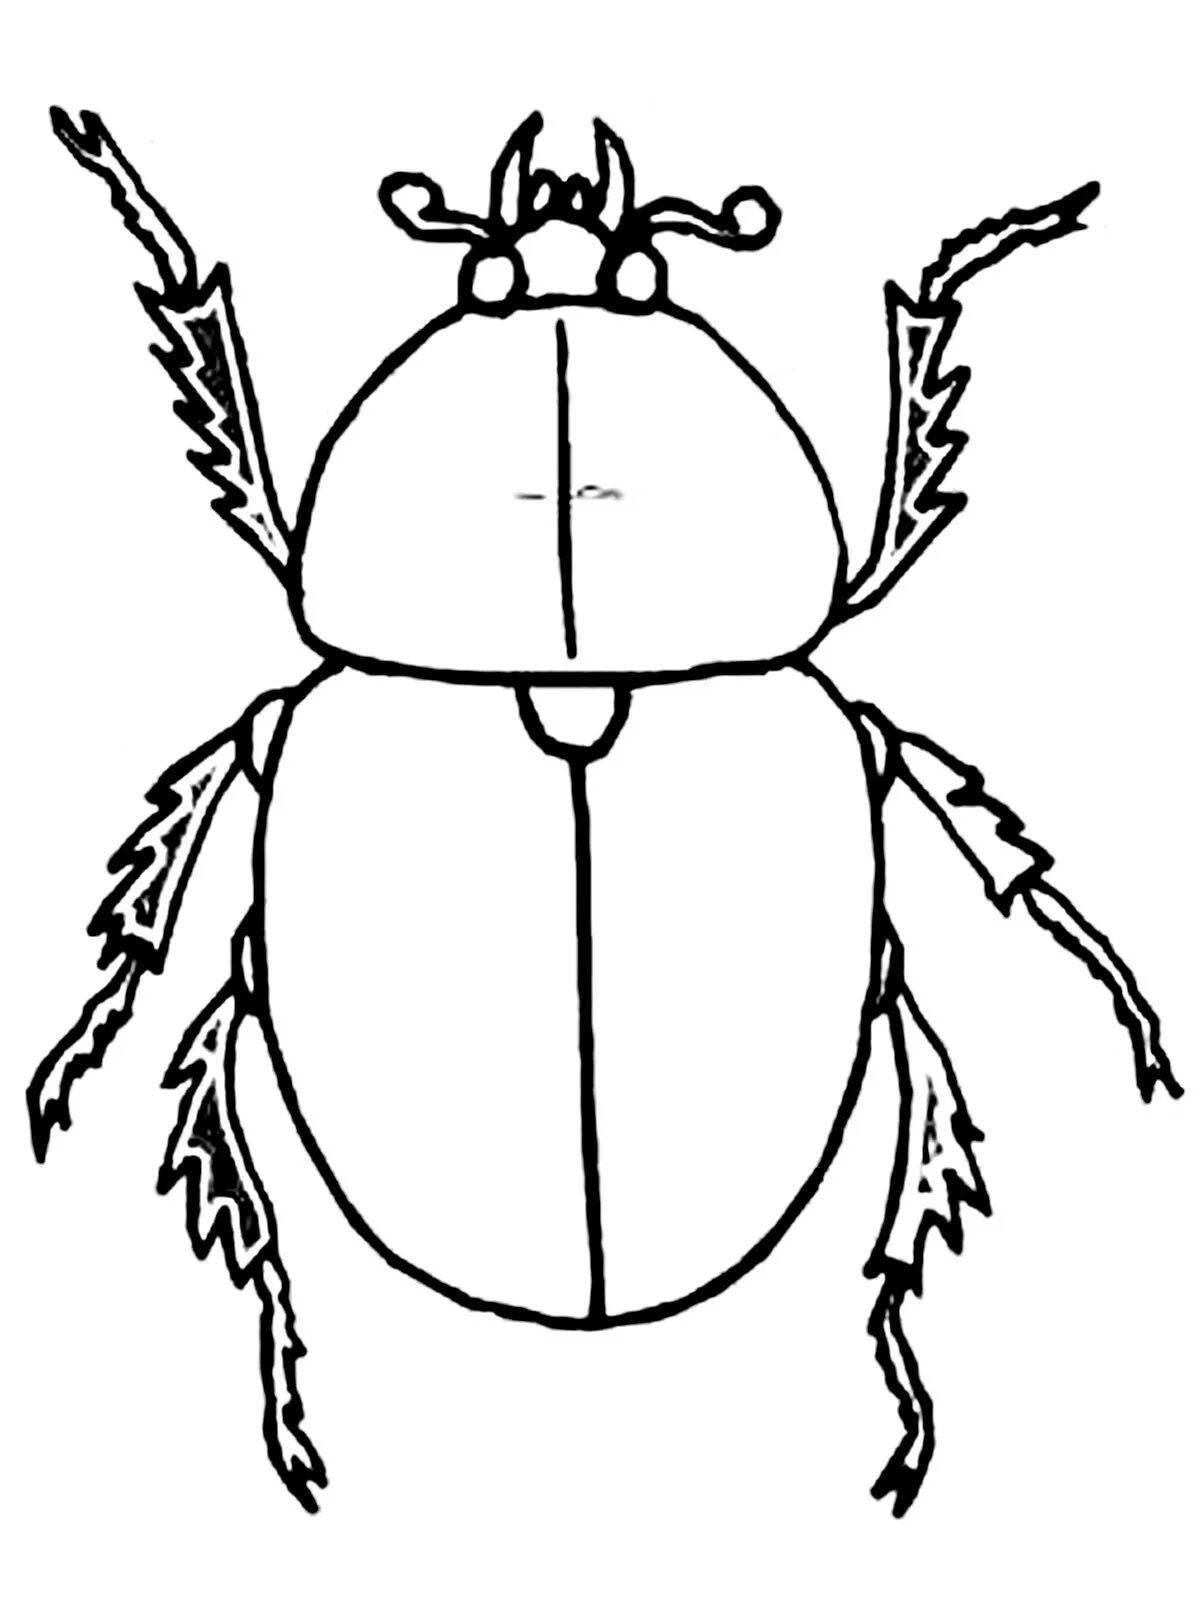 Фото Увлекательная страница раскраски майского жука